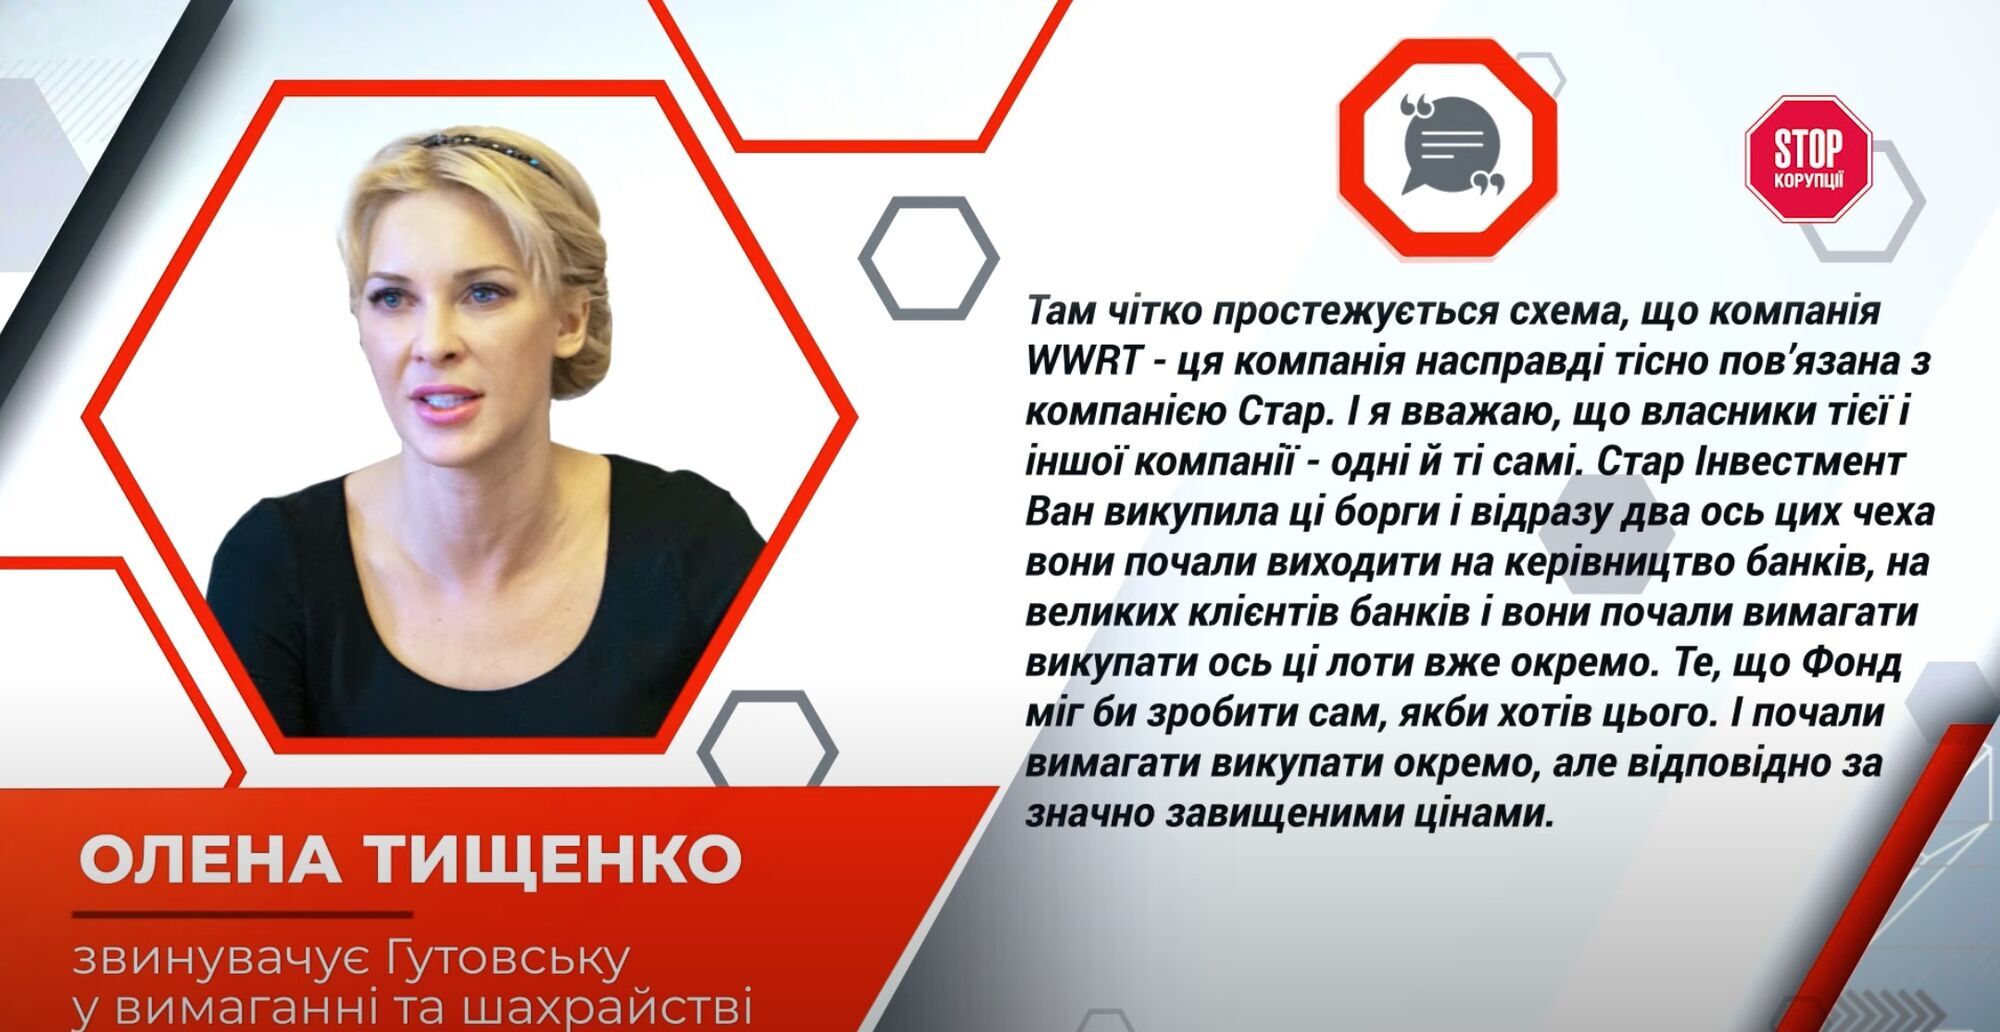 Elena Tishchenko revealed details of the scheme involving Gutovskaya